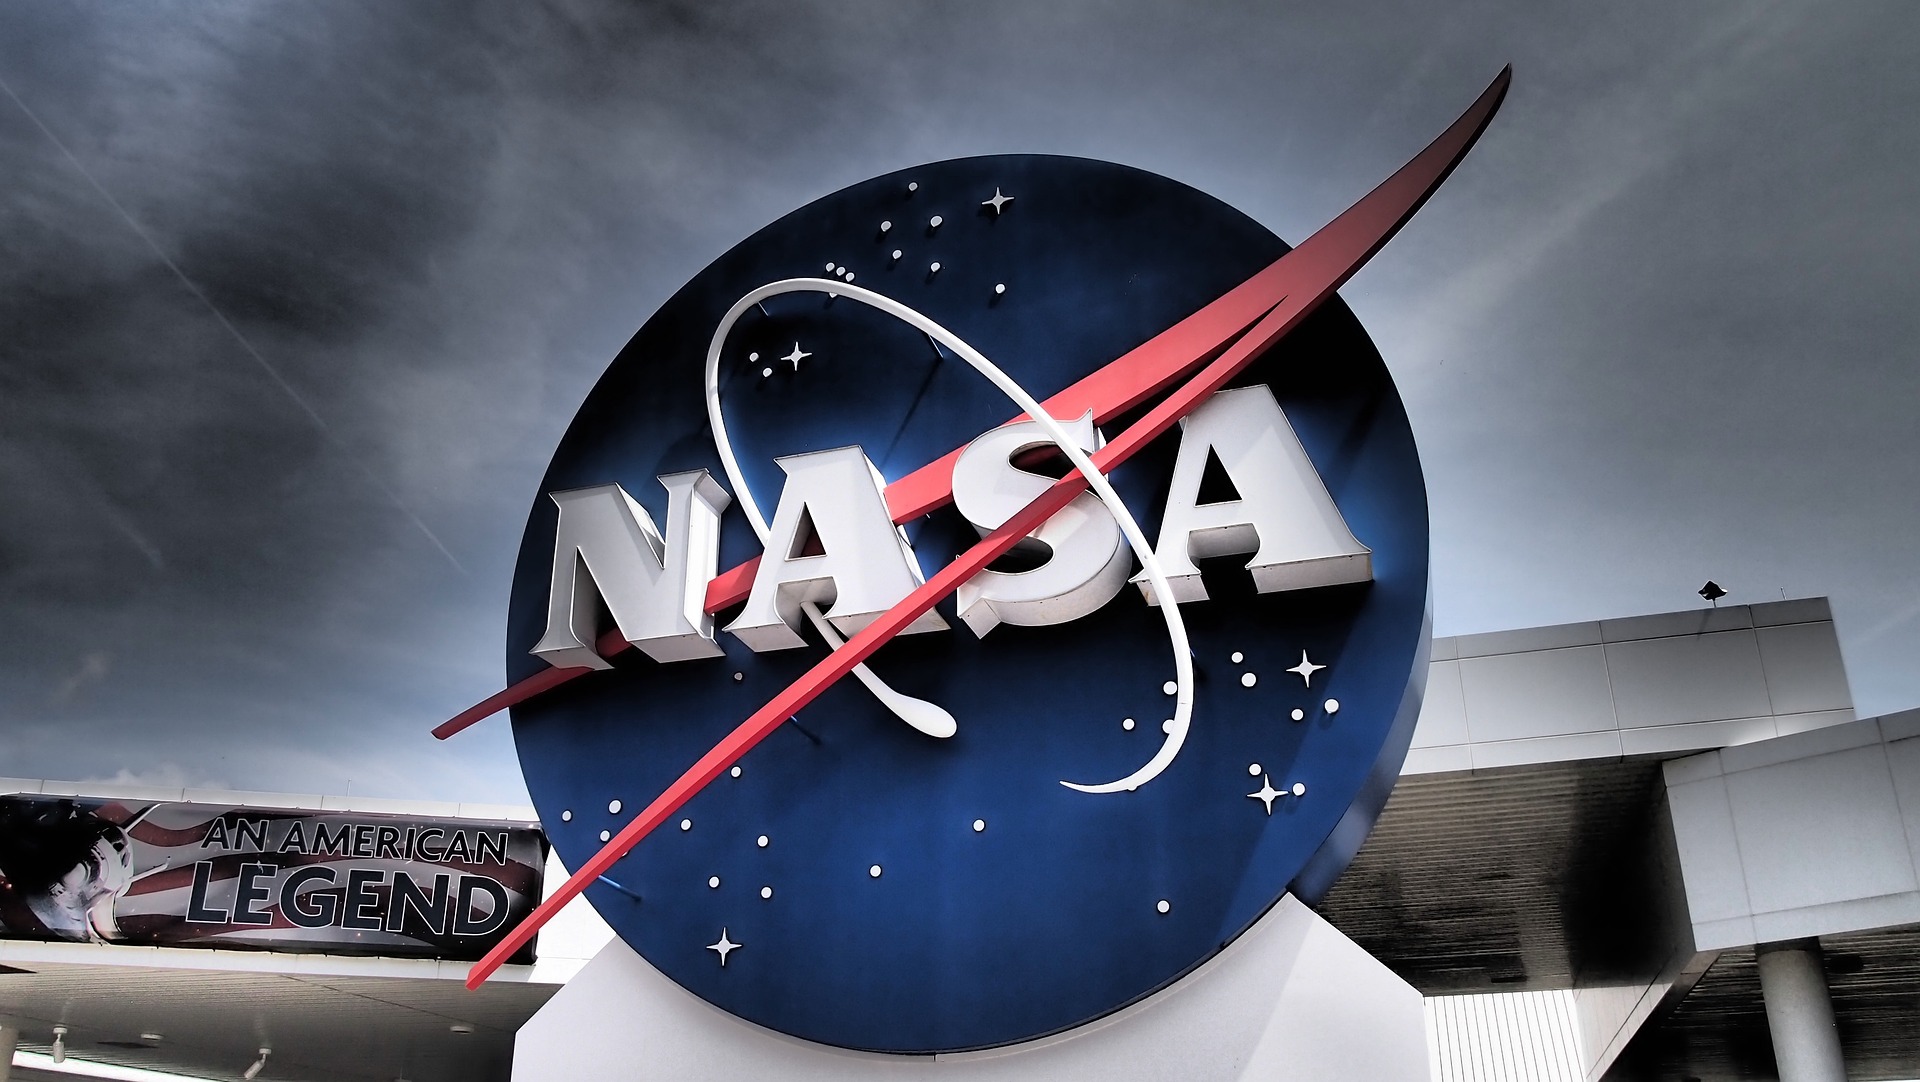 El Robonauta es una de las últimas innovaciones tecnológicas de la NASA